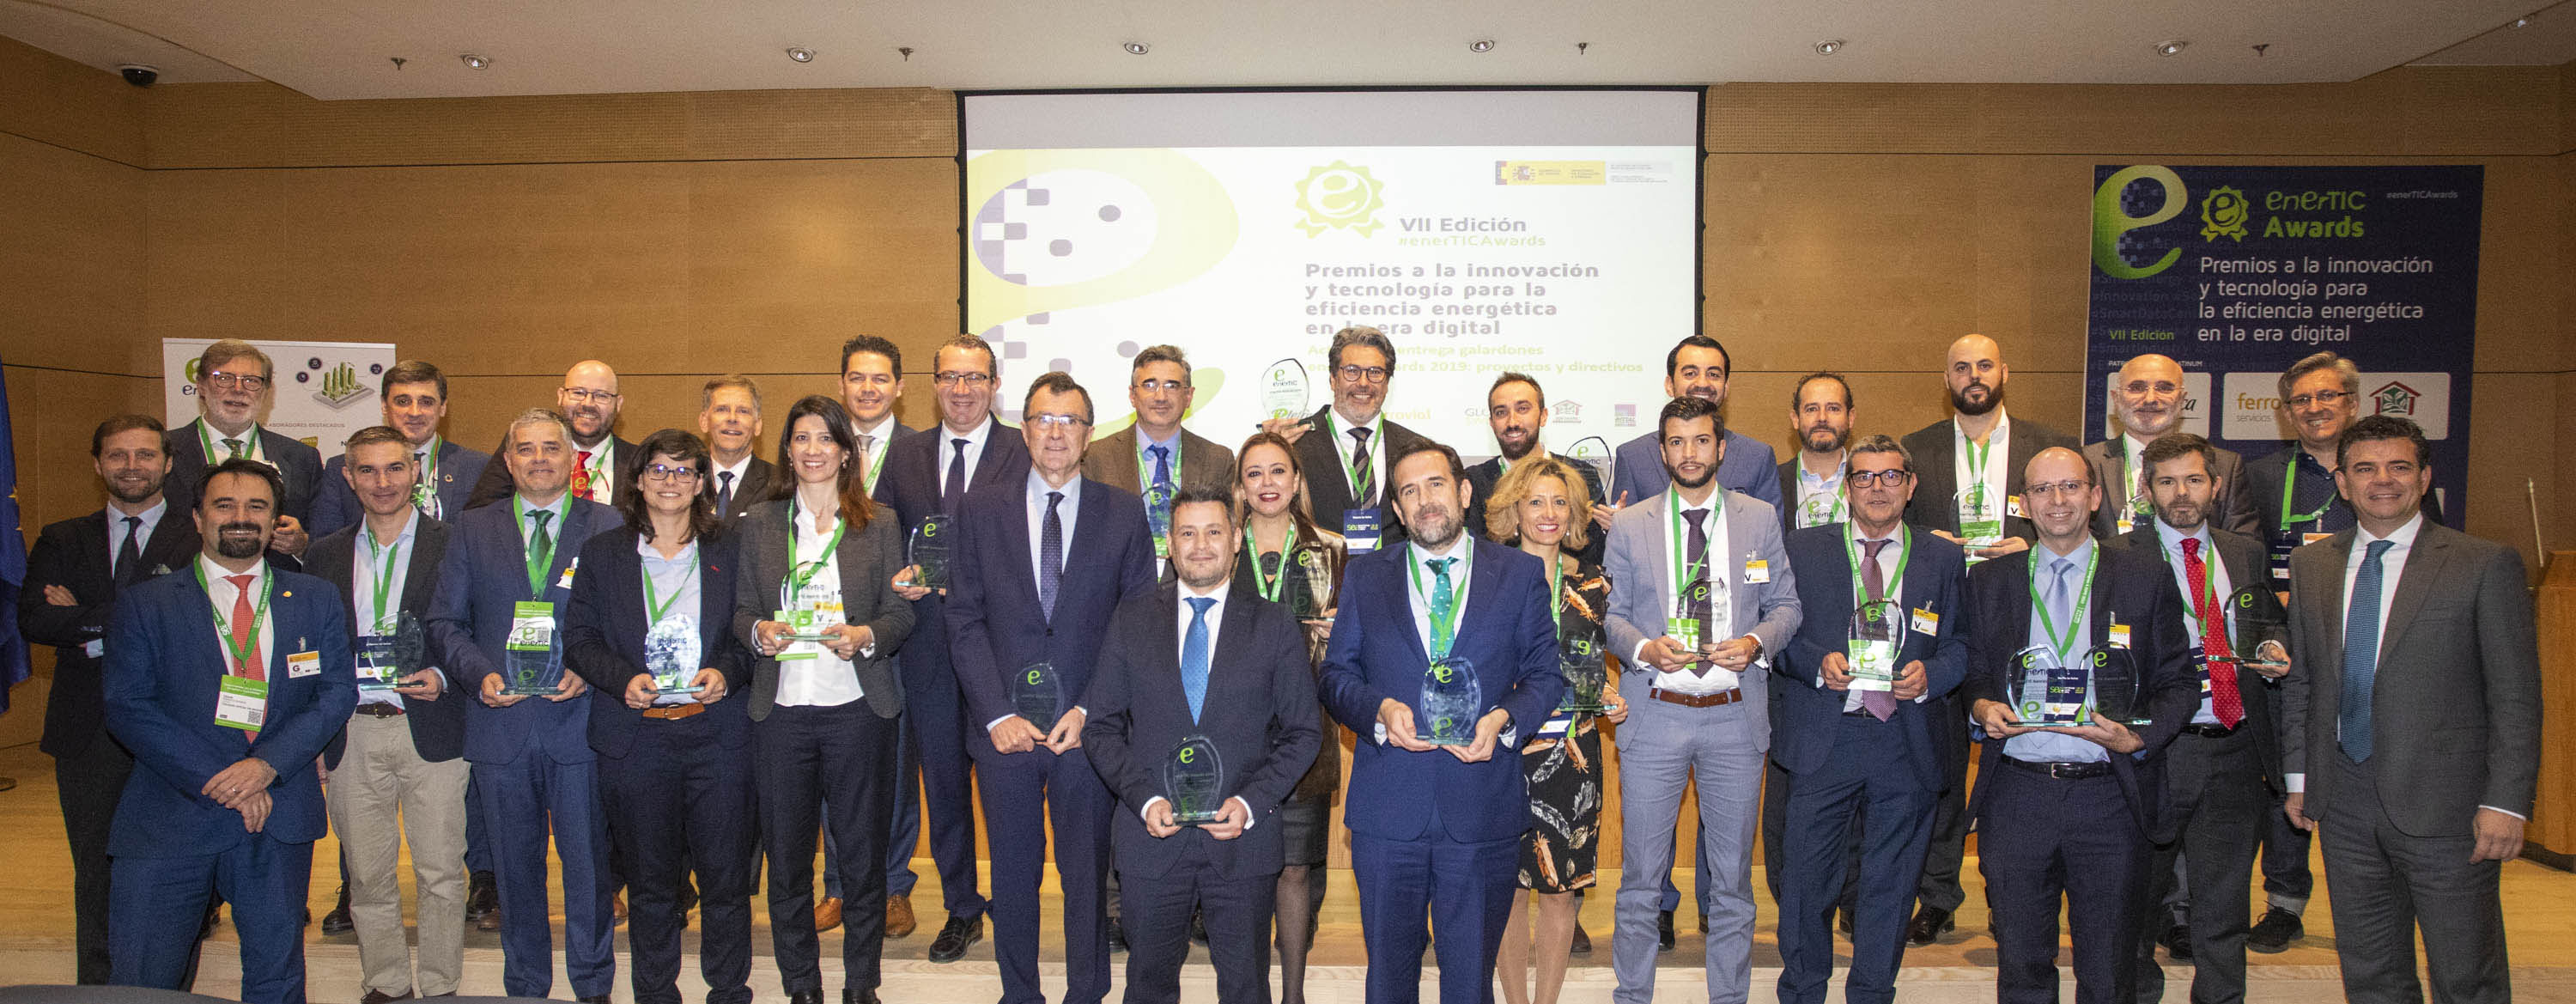 Ceremonia de Entrega enerTIC Awards 2019 - Proyectos y directivos galardonados